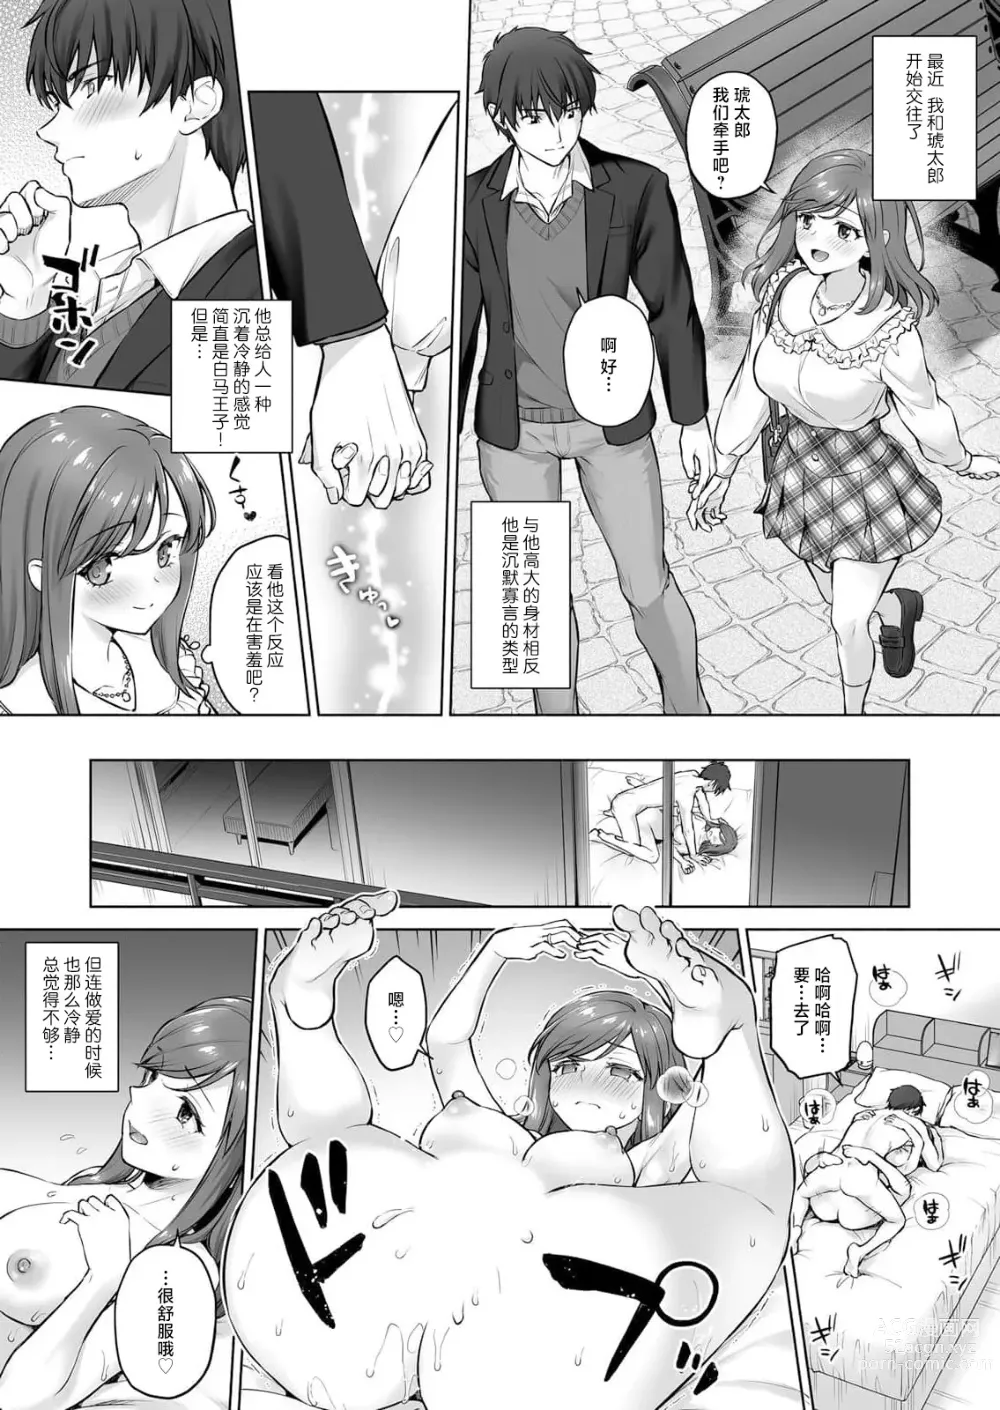 Page 3 of manga 在满月之夜与变身为野兽的兽耳男友进行的肉食系SEX实在太过激烈…